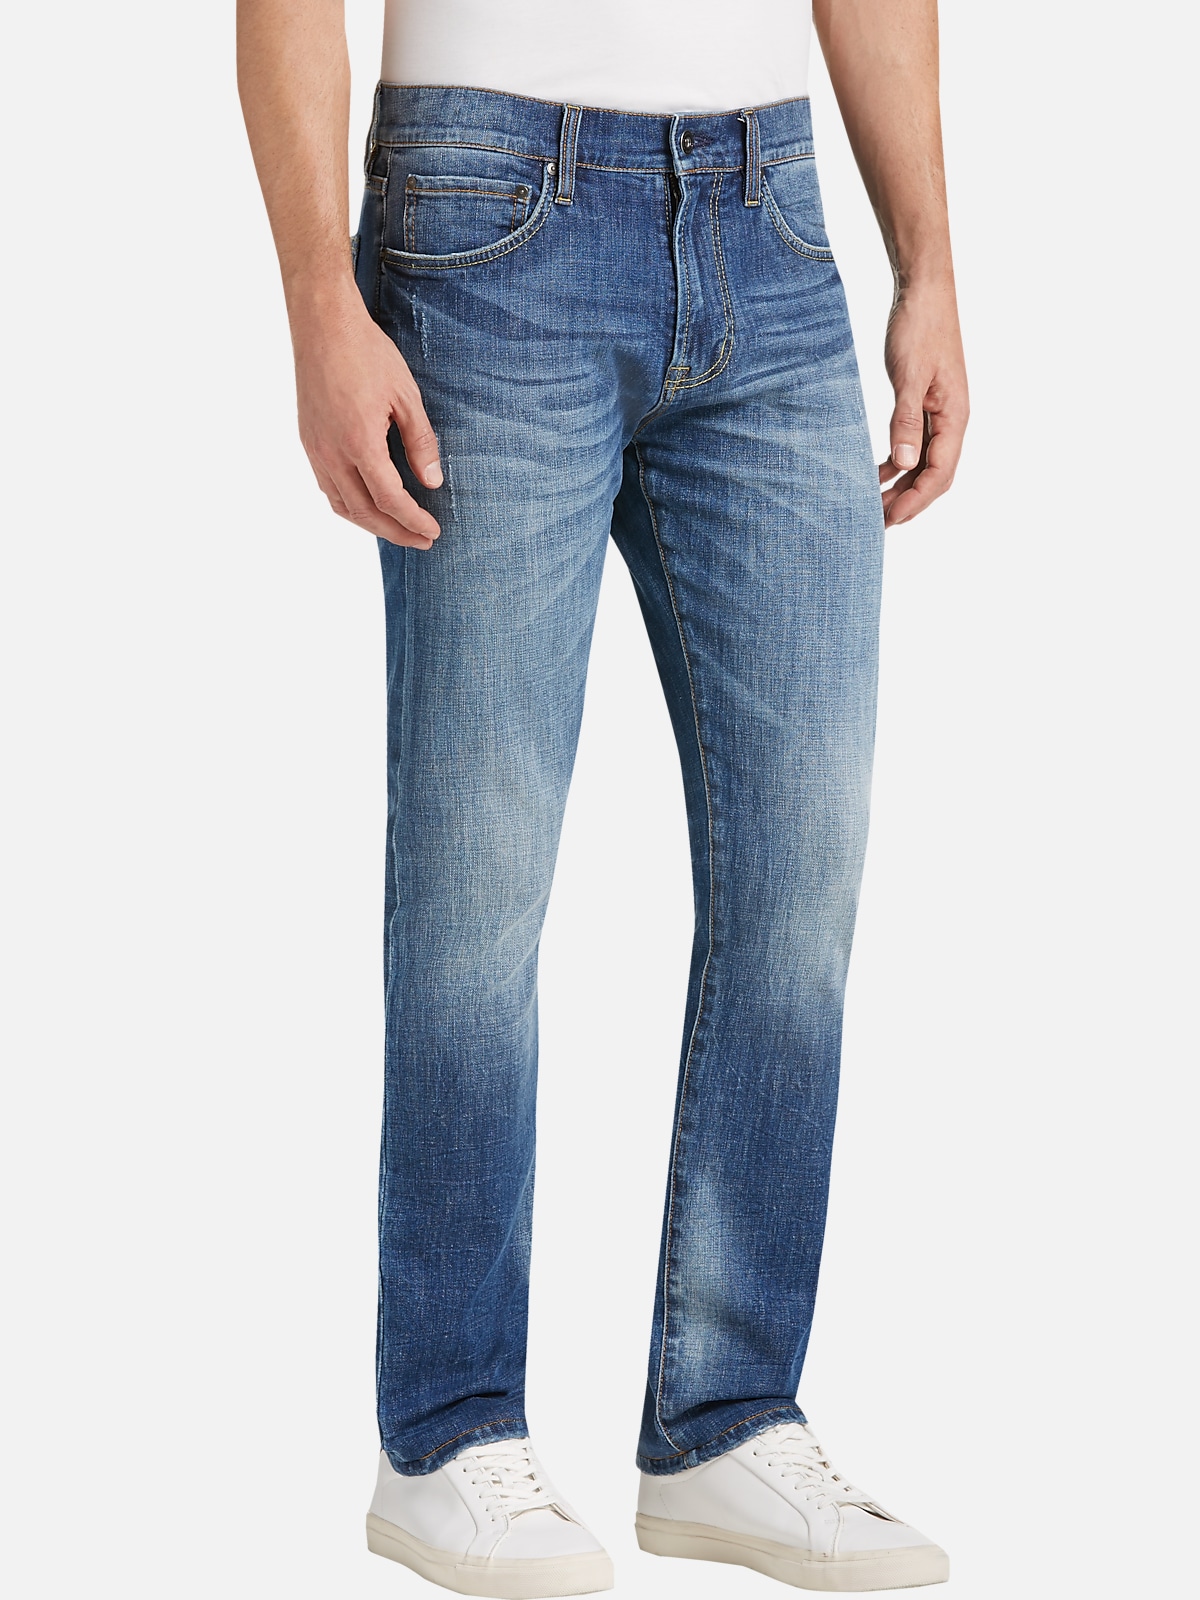 Joseph Abboud Slim Fit Jeans | The Casual Shop| Men's Wearhouse